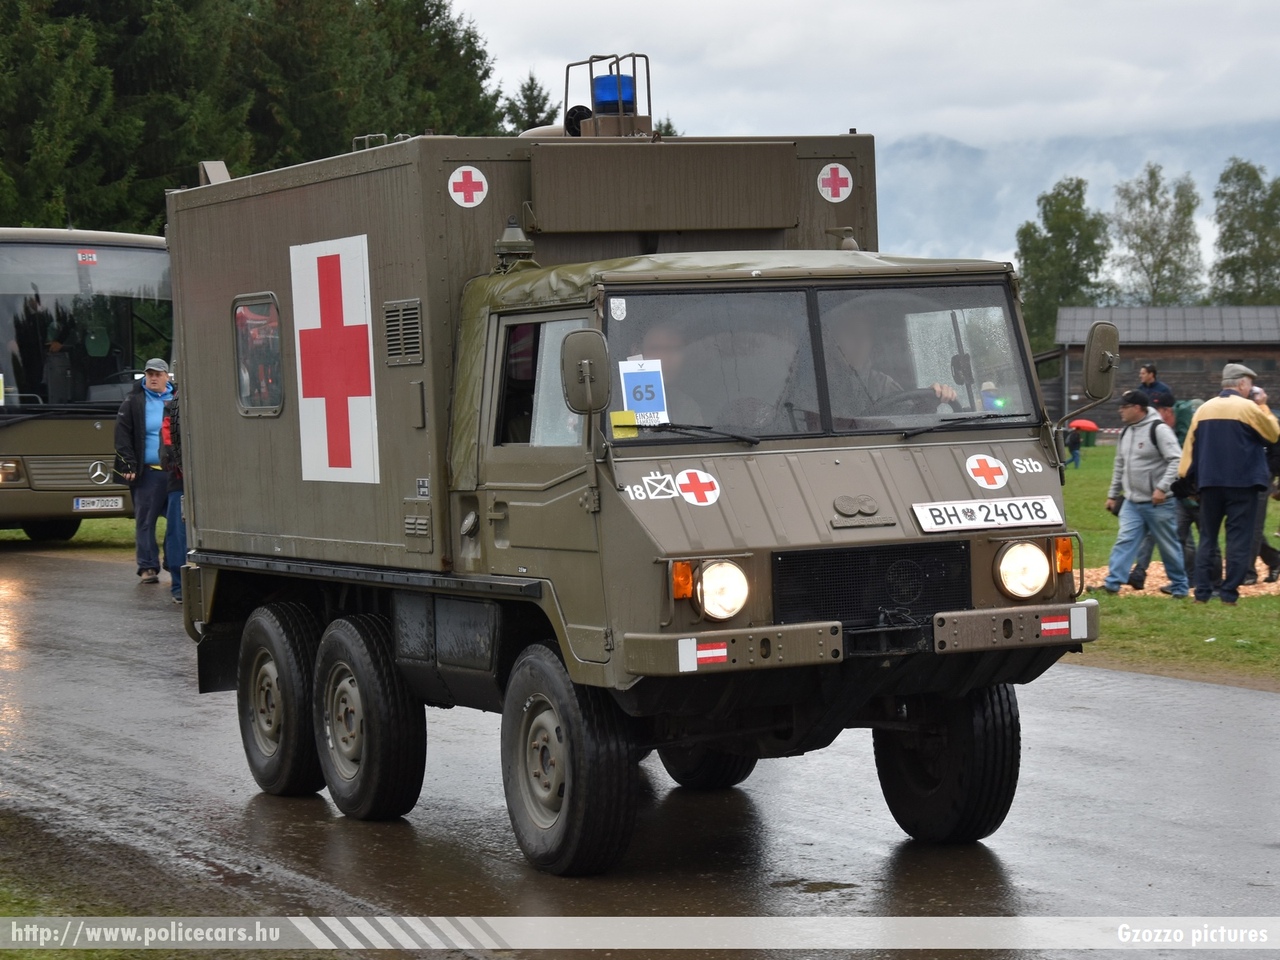 Pinzgauer, fotó: Gzozzo pictures
Keywords: osztrák Ausztria Austria austrian mentő mentőautó ambulance katonai military